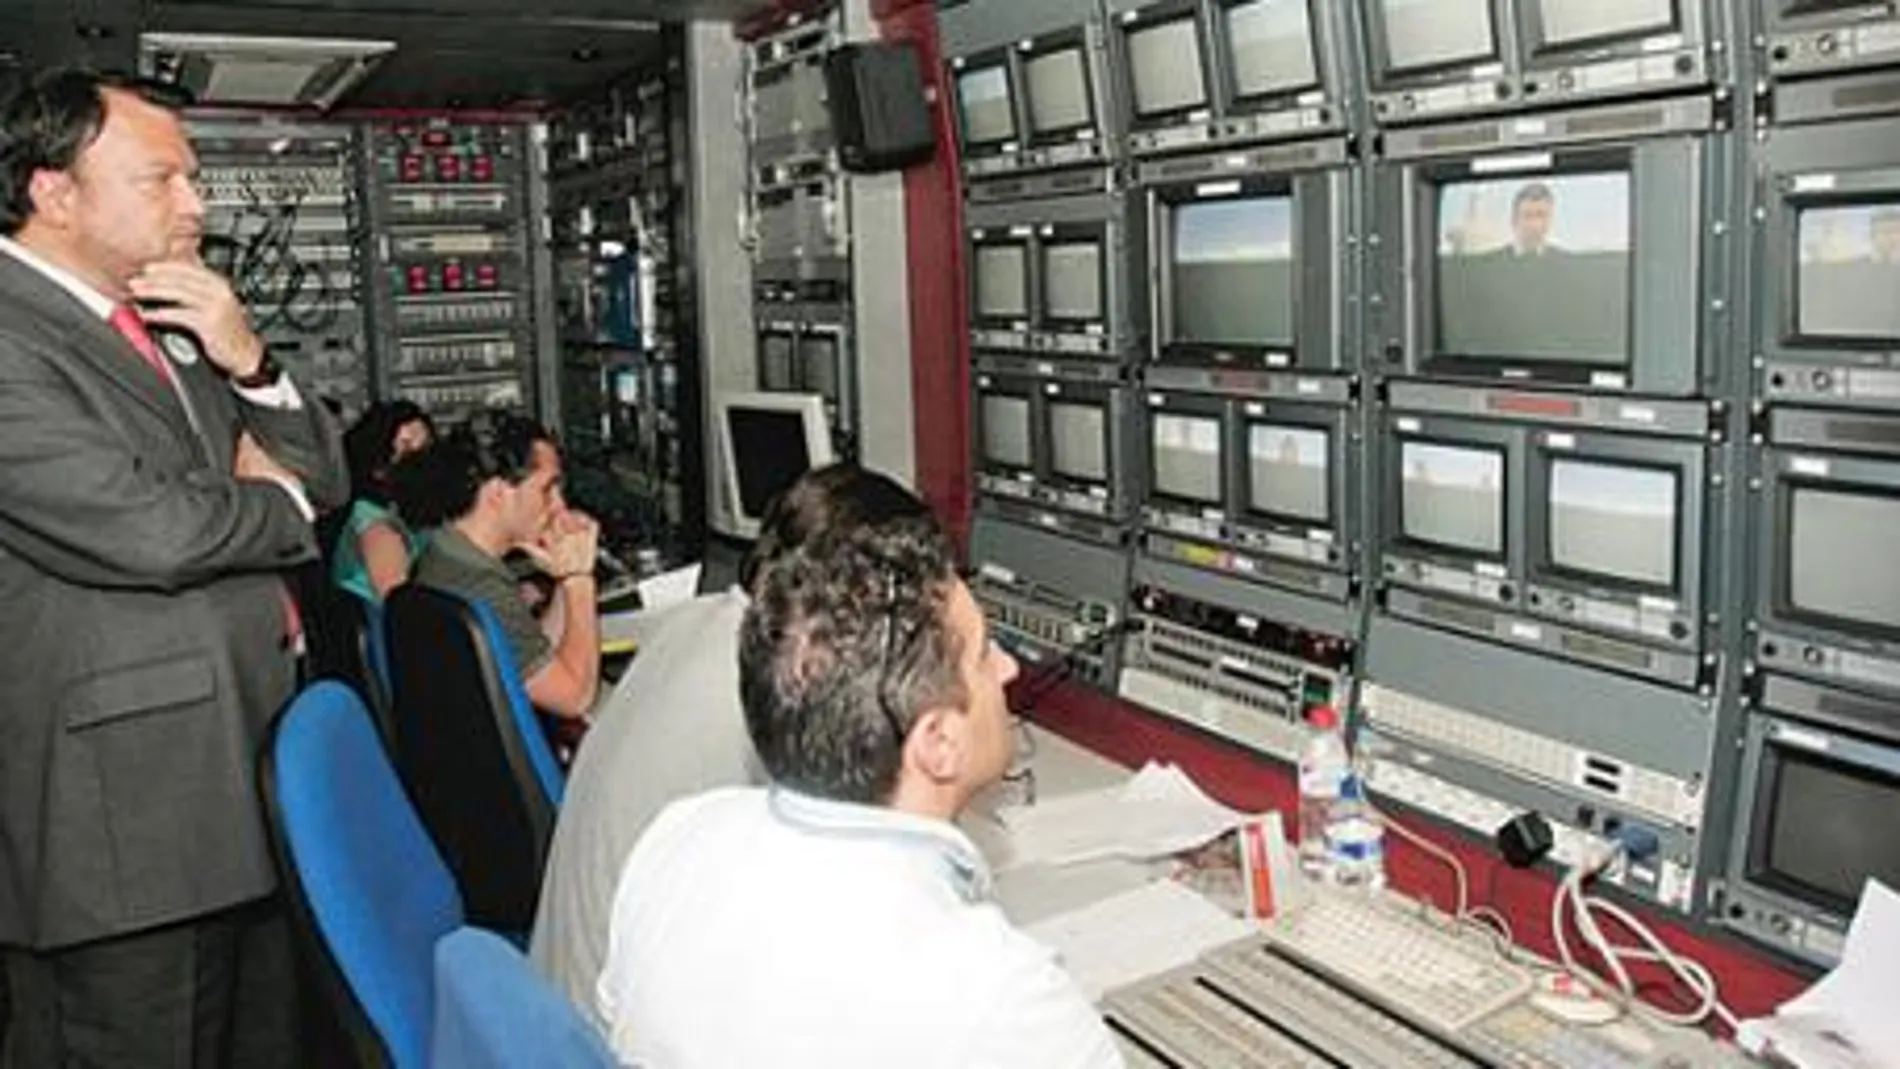 PSOE e IU intentan acaparar el control de la TV municipal